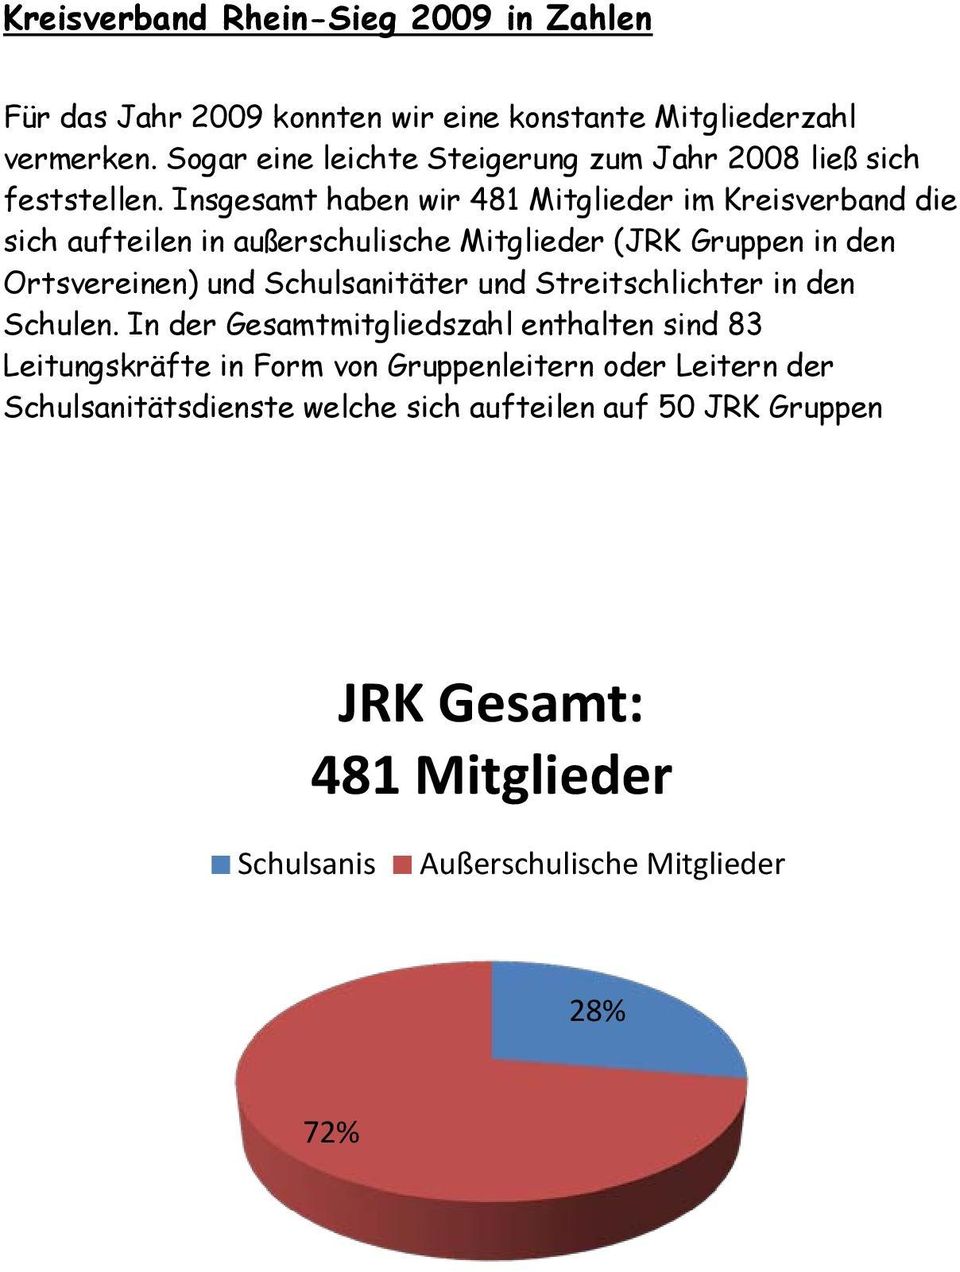 Insgesamt haben wir 481 Mitglieder im Kreisverband die sich aufteilen in außerschulische Mitglieder (JRK Gruppen in den Ortsvereinen) und